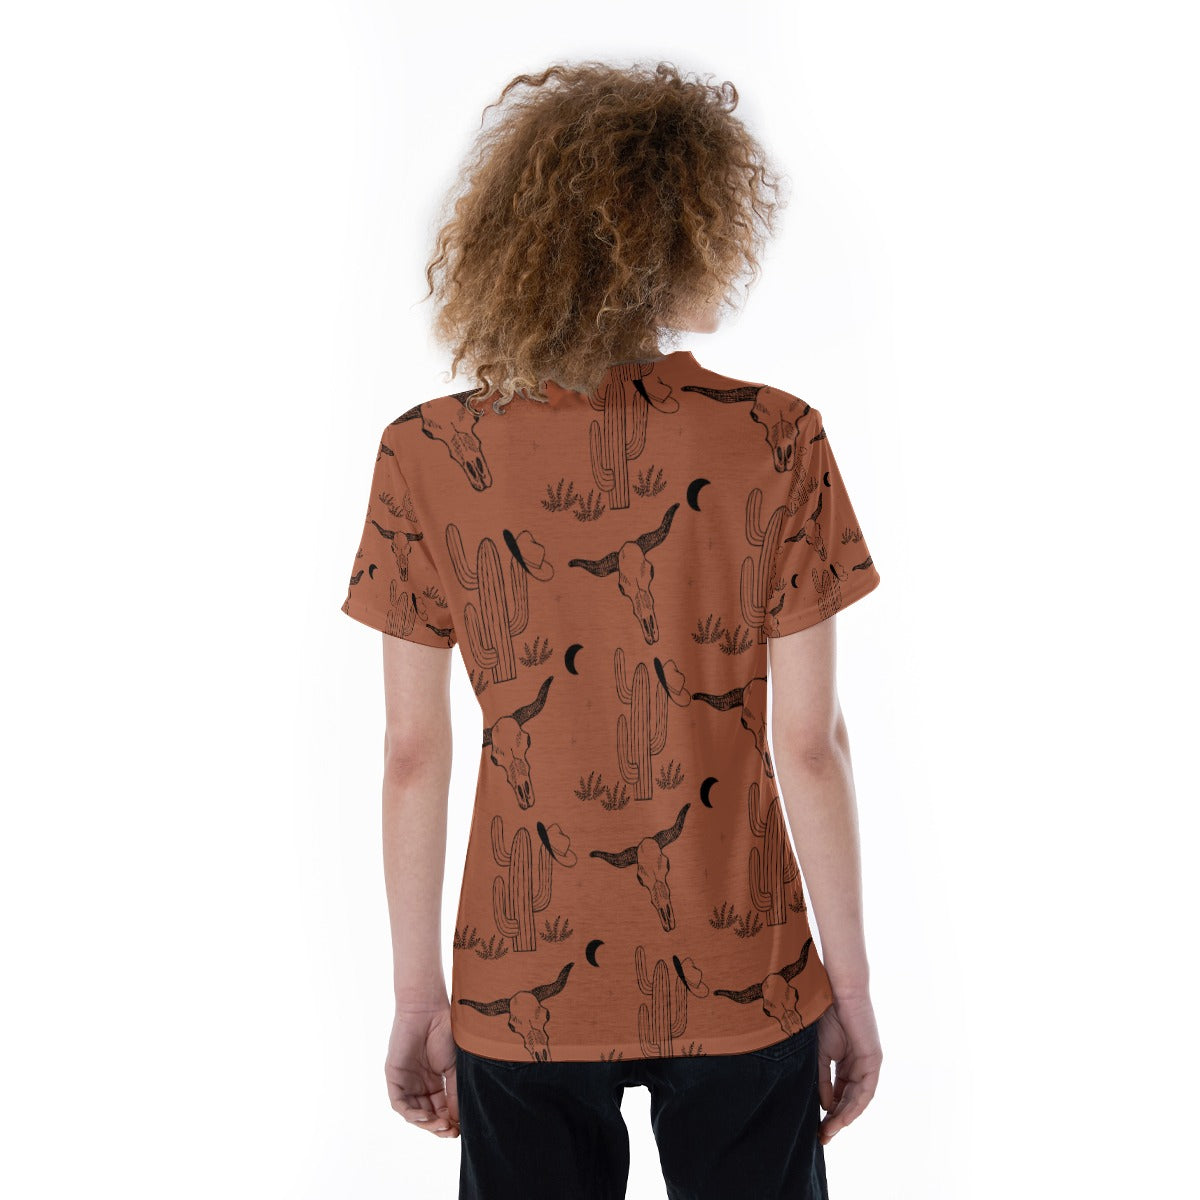 Rust Bullskull Cactus V-neck Women's T-shirt